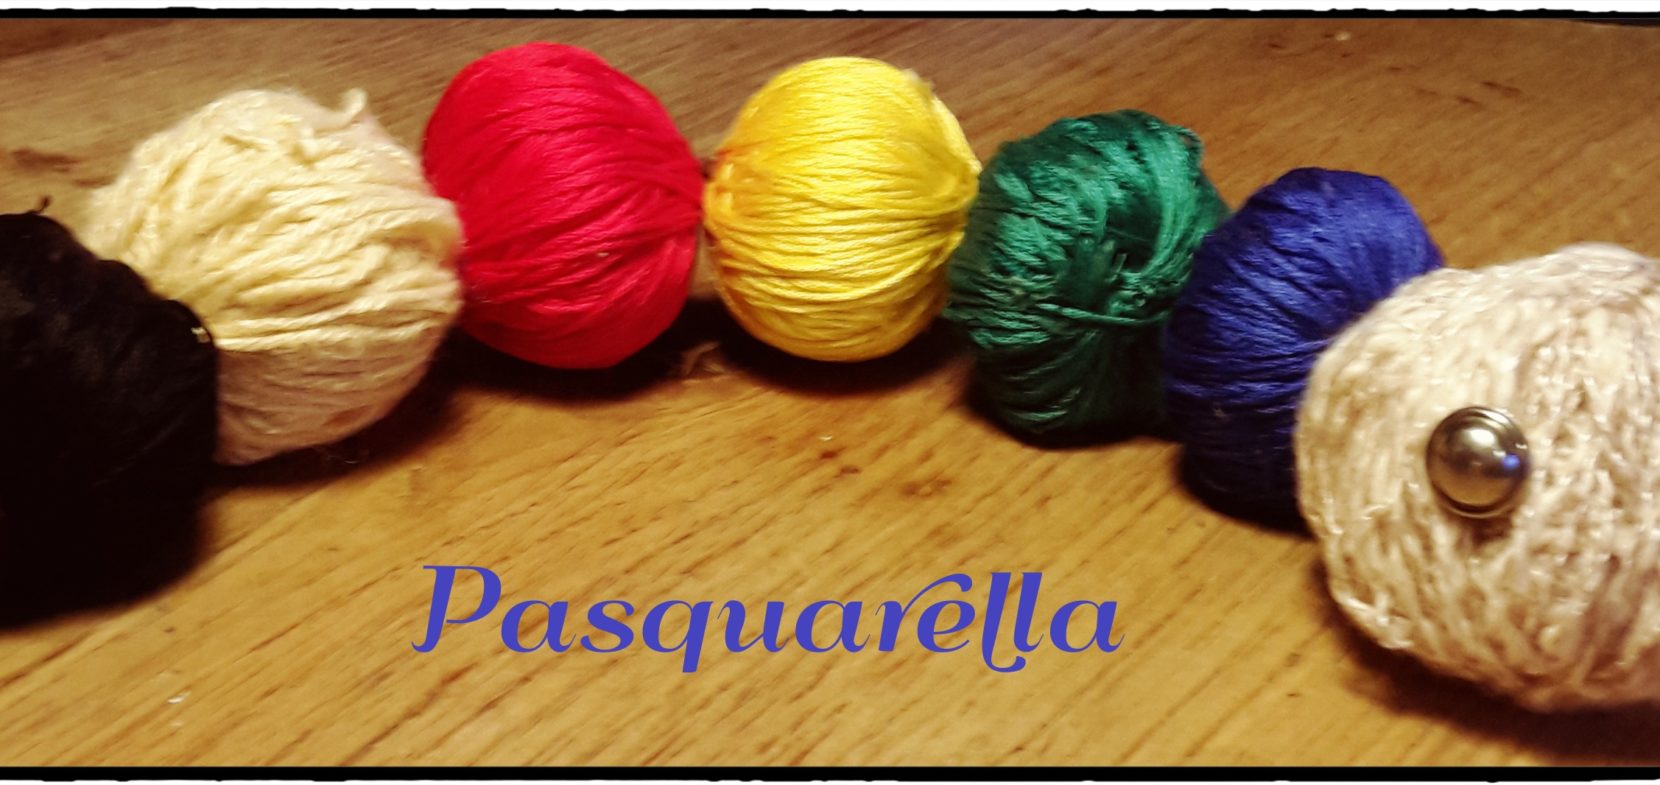 Pasquarella